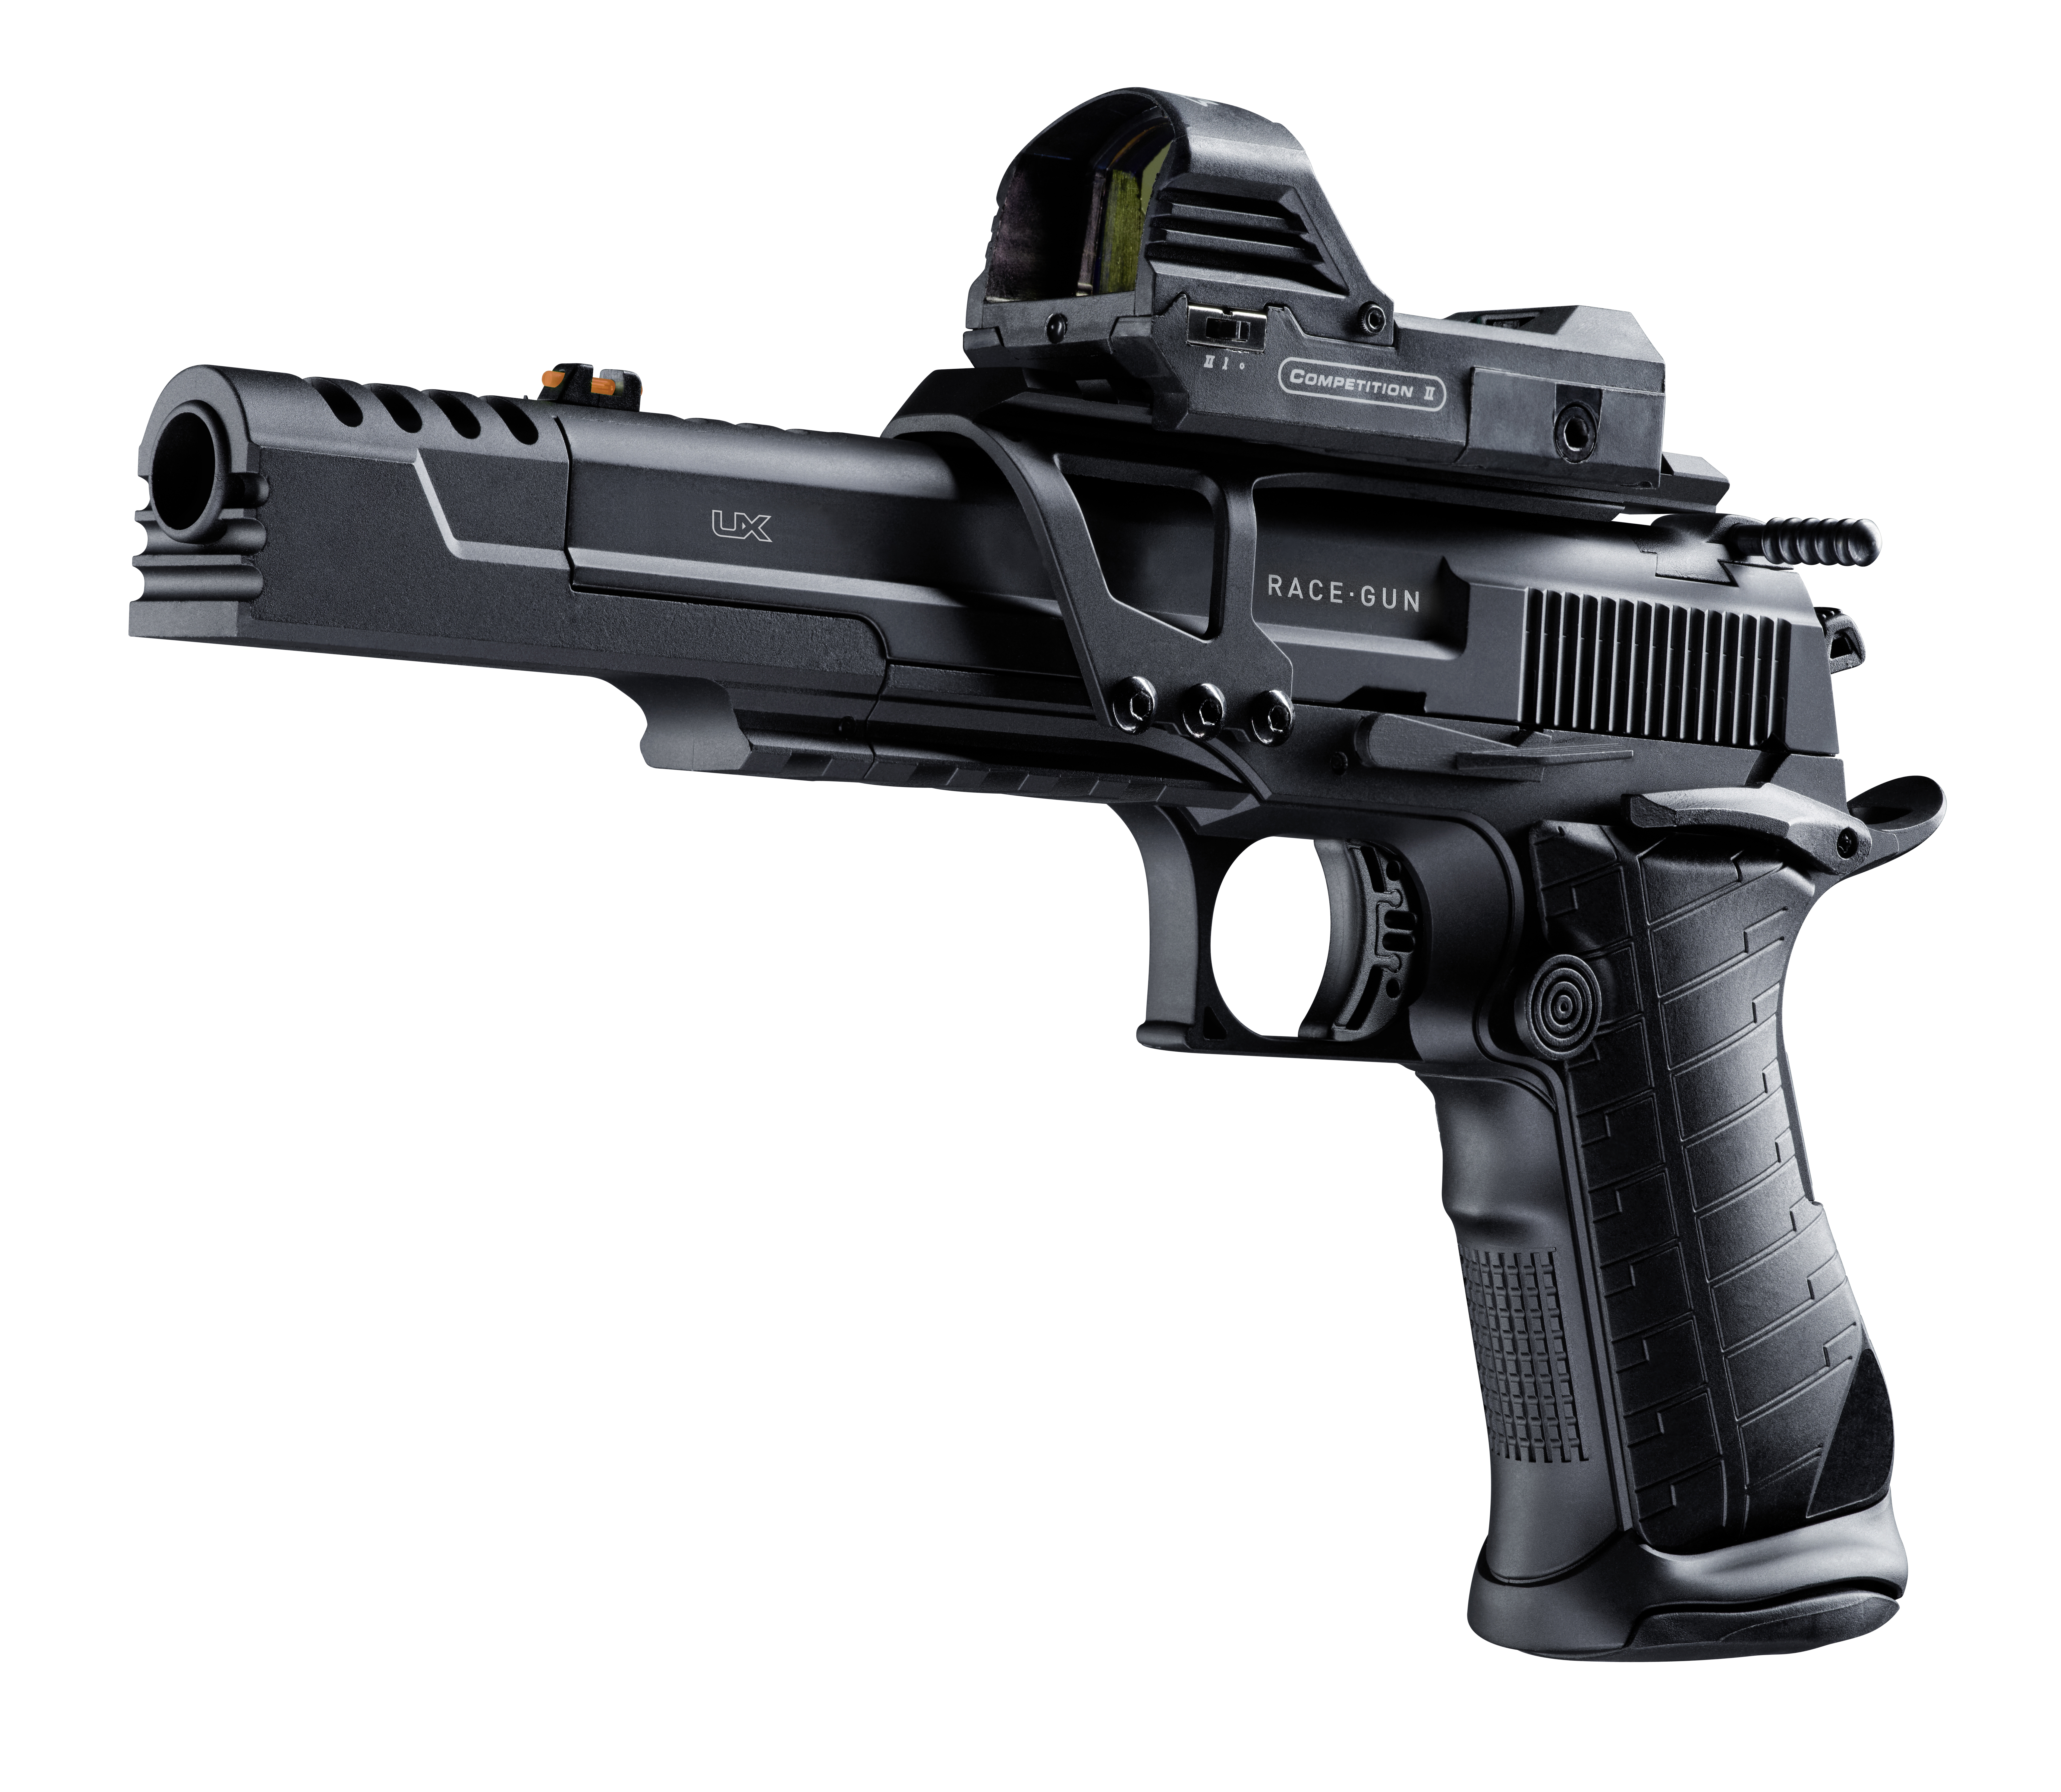 UX Racegun Set aus der linken Perspektive, inklusive Pistole und Zubehör